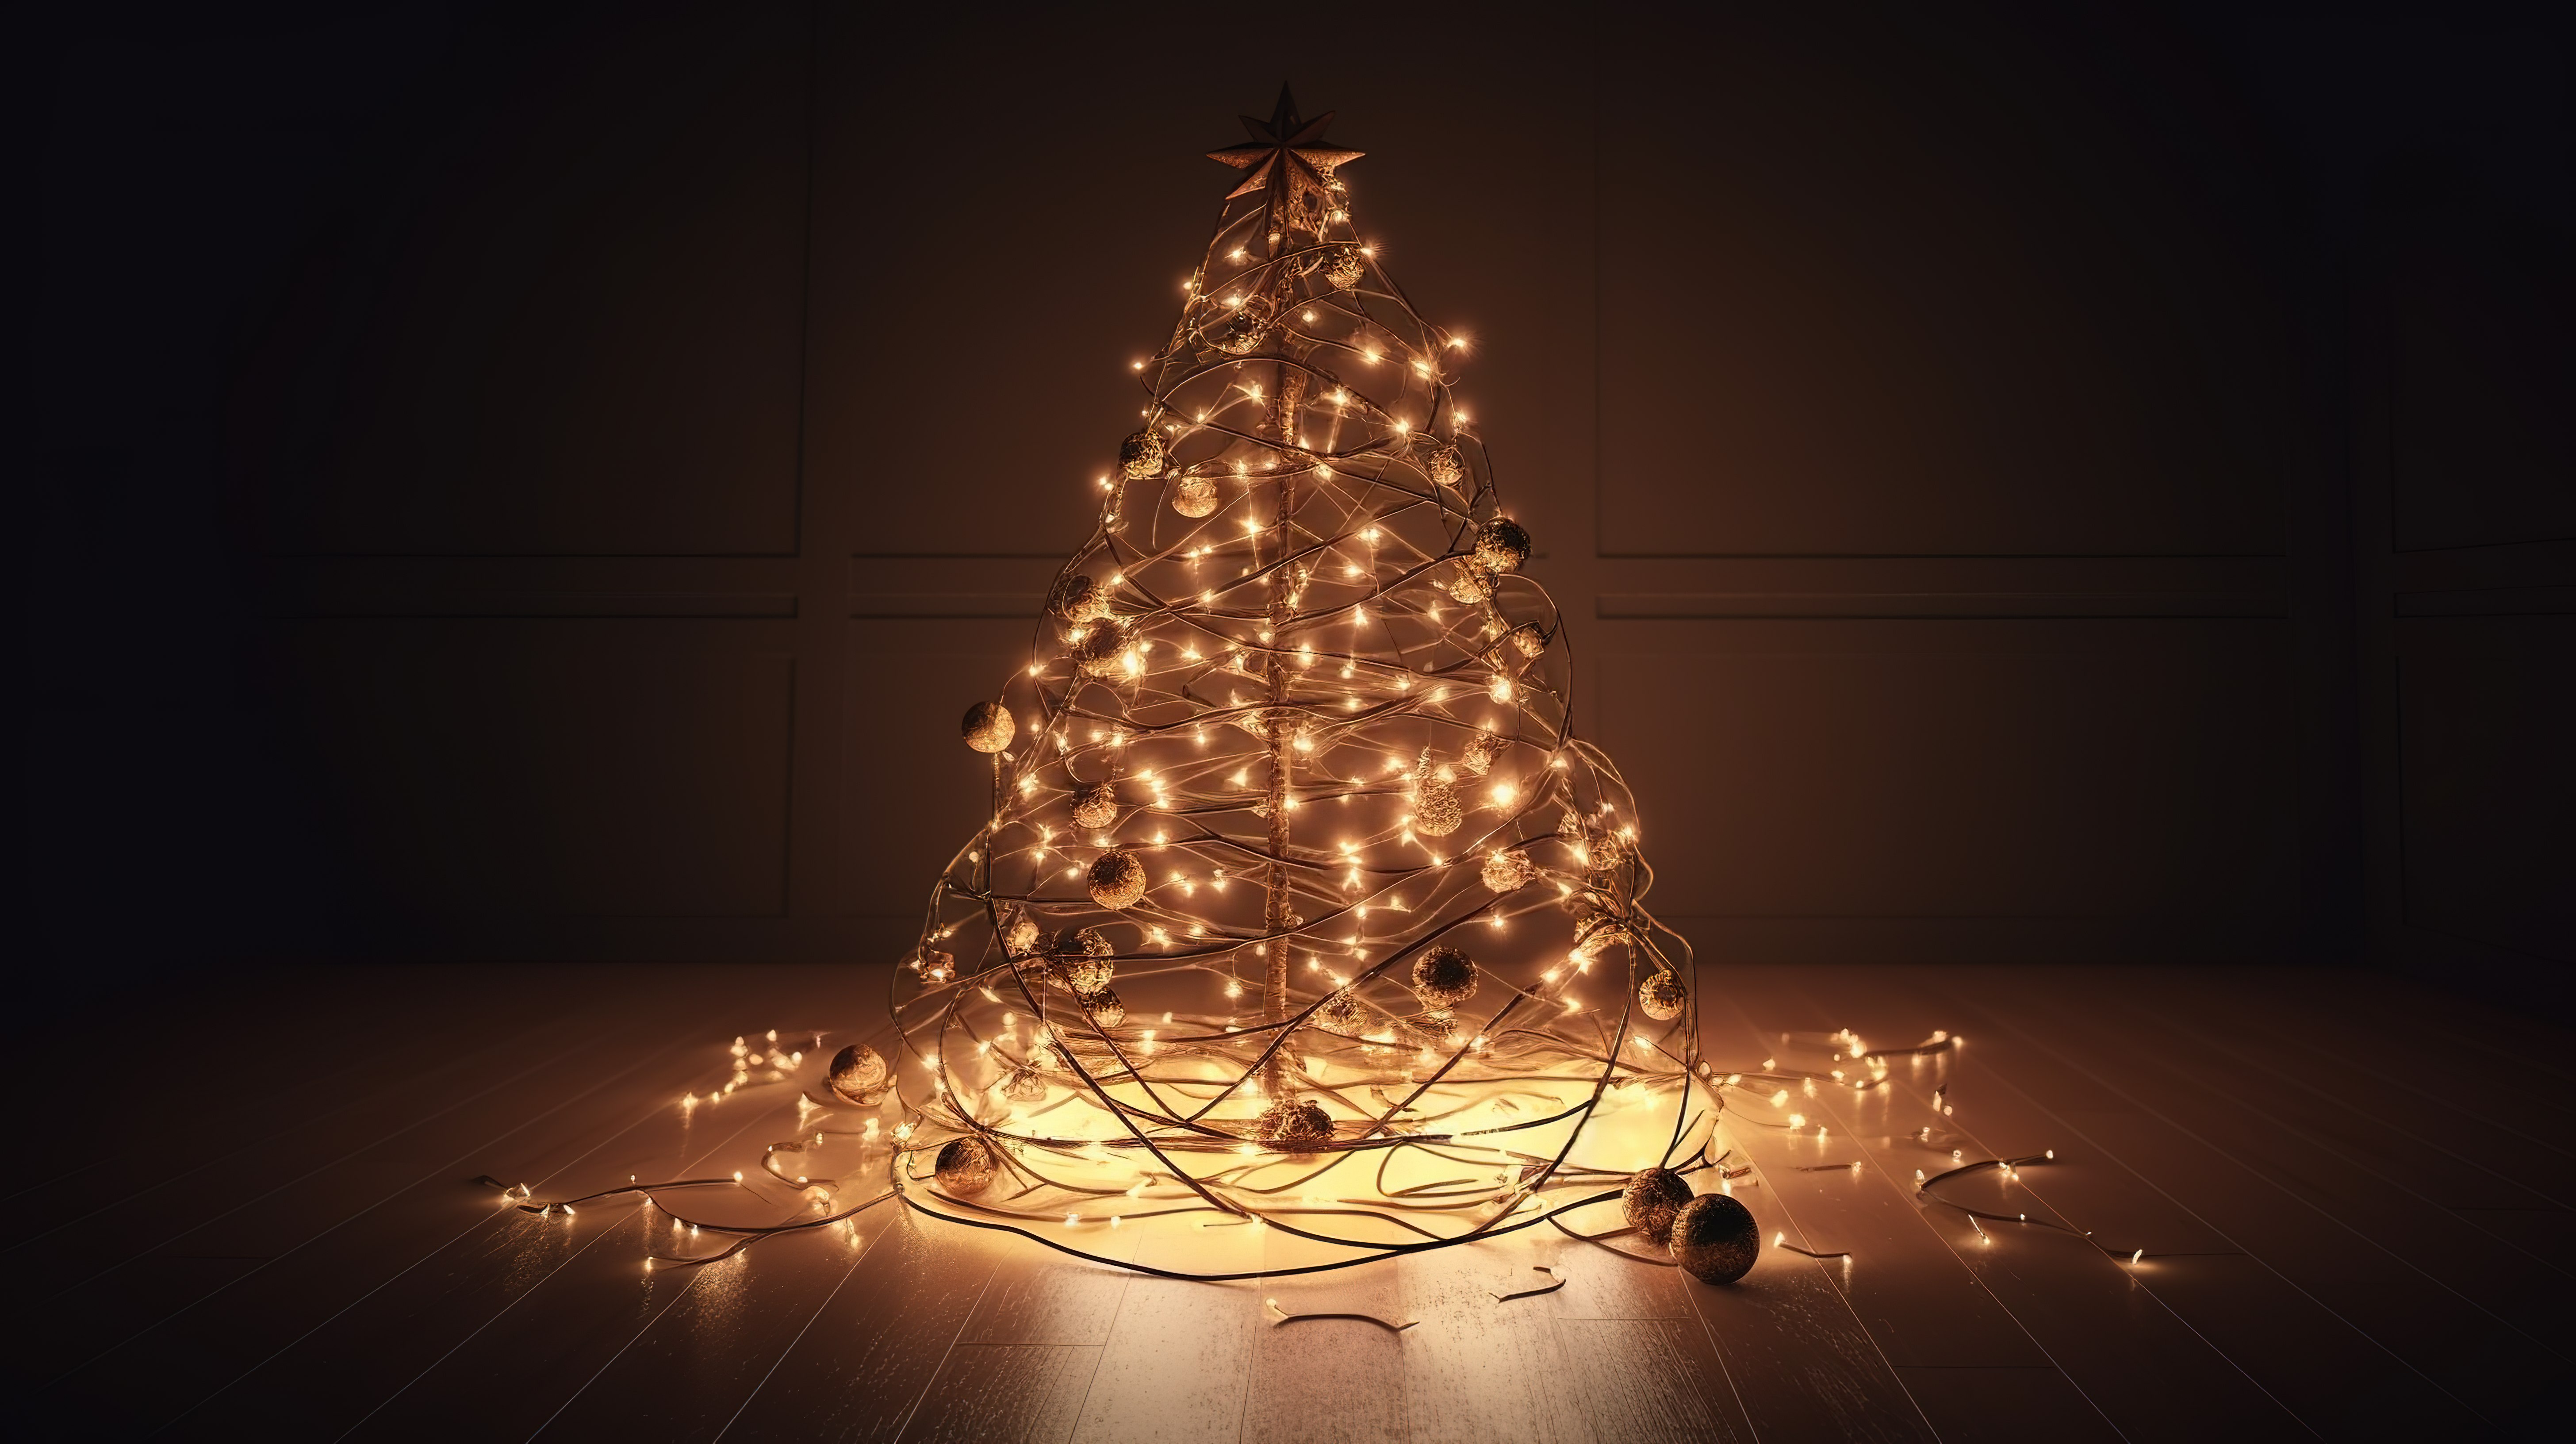 3D 渲染中装饰着装饰品和闪烁绳灯的节日圣诞树图片